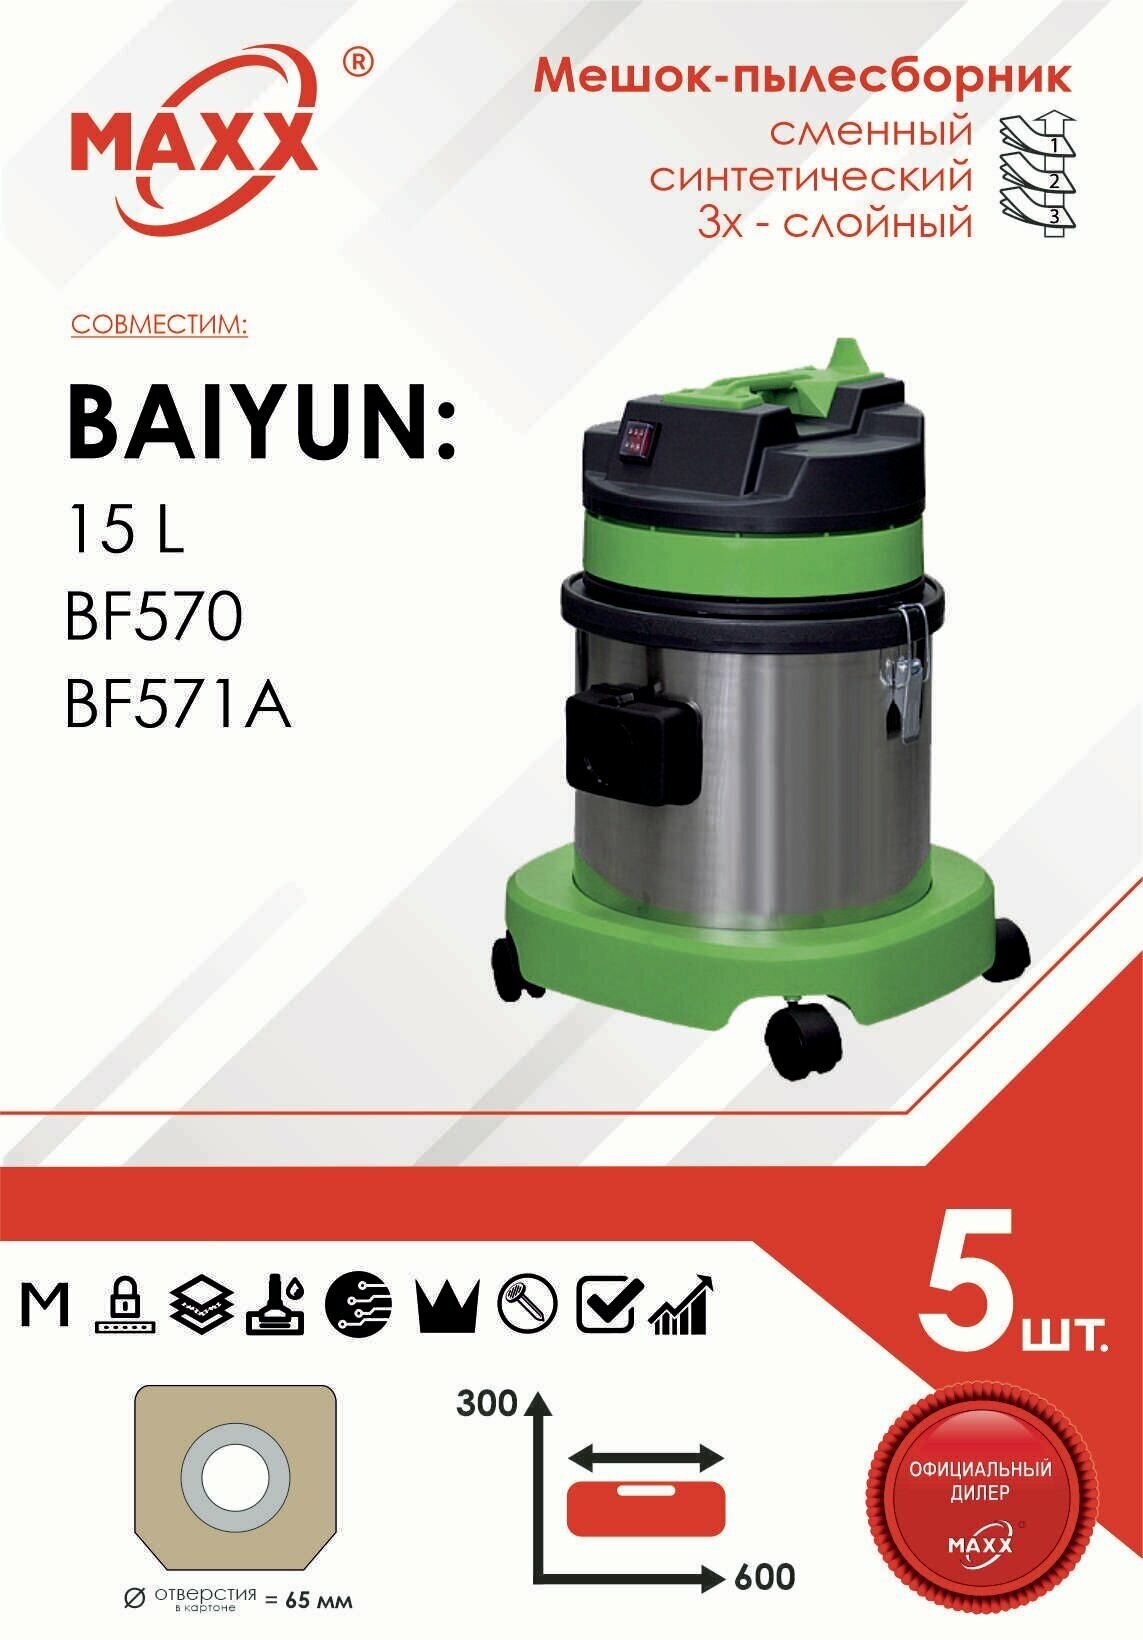 Мешок - пылесборник 5 шт. для пылесоса Baiyun 15л, BF570, BF570 (арт. PS-0115 GRASS)